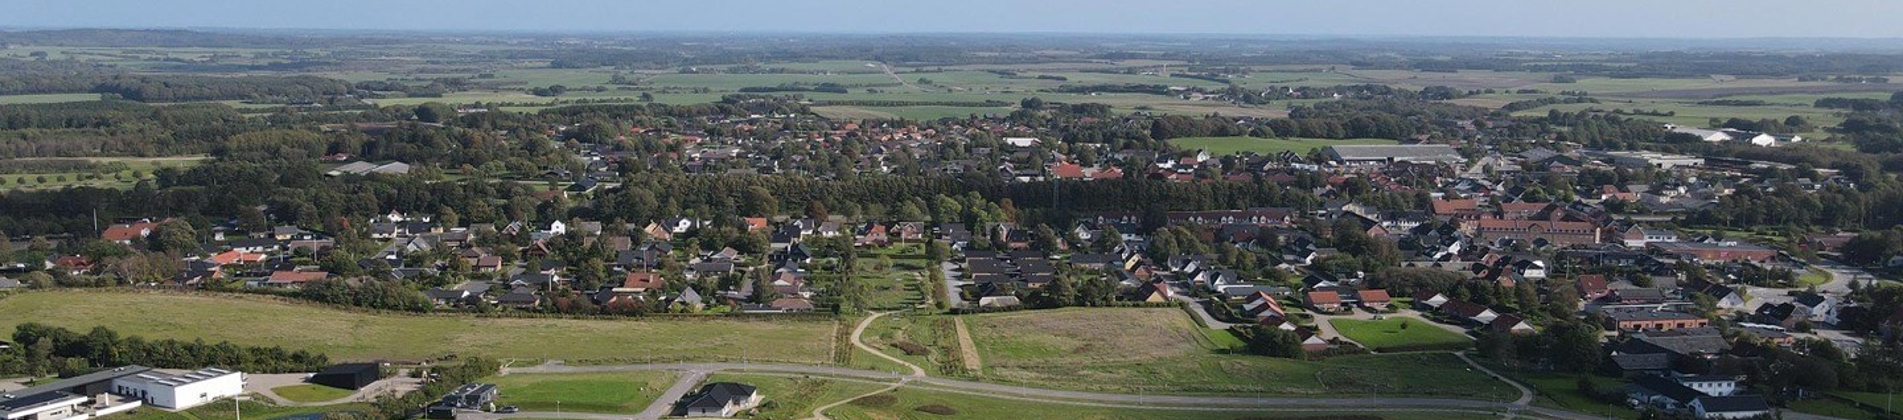 Luftfoto af parcelhus udstykningen Hesselholt Skovhuse i Arden. 